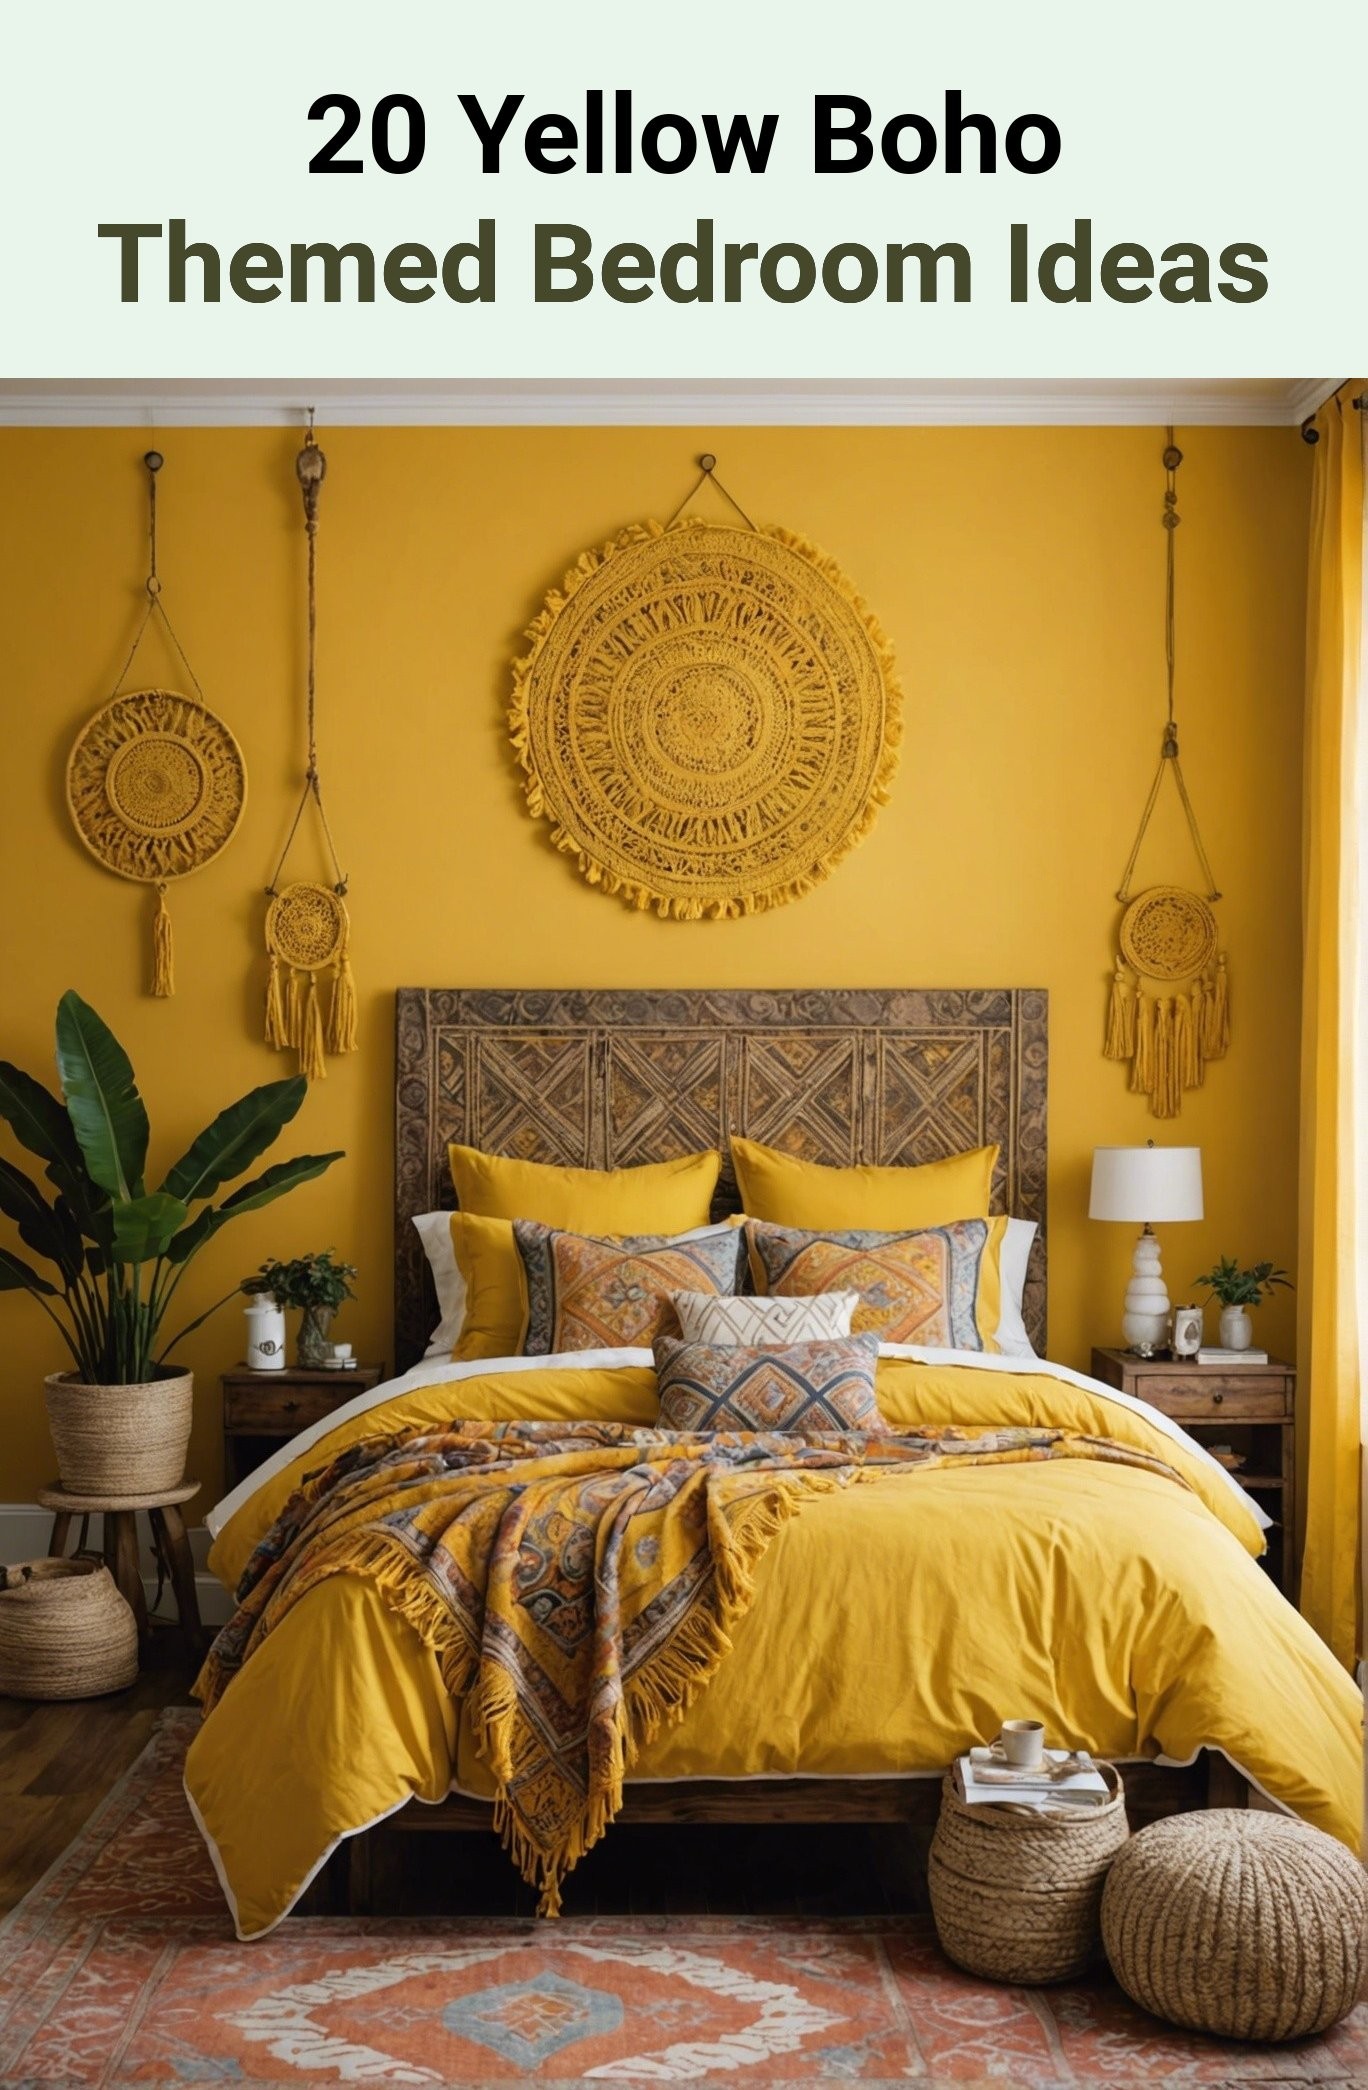 20 Yellow Boho Themed Bedroom Ideas